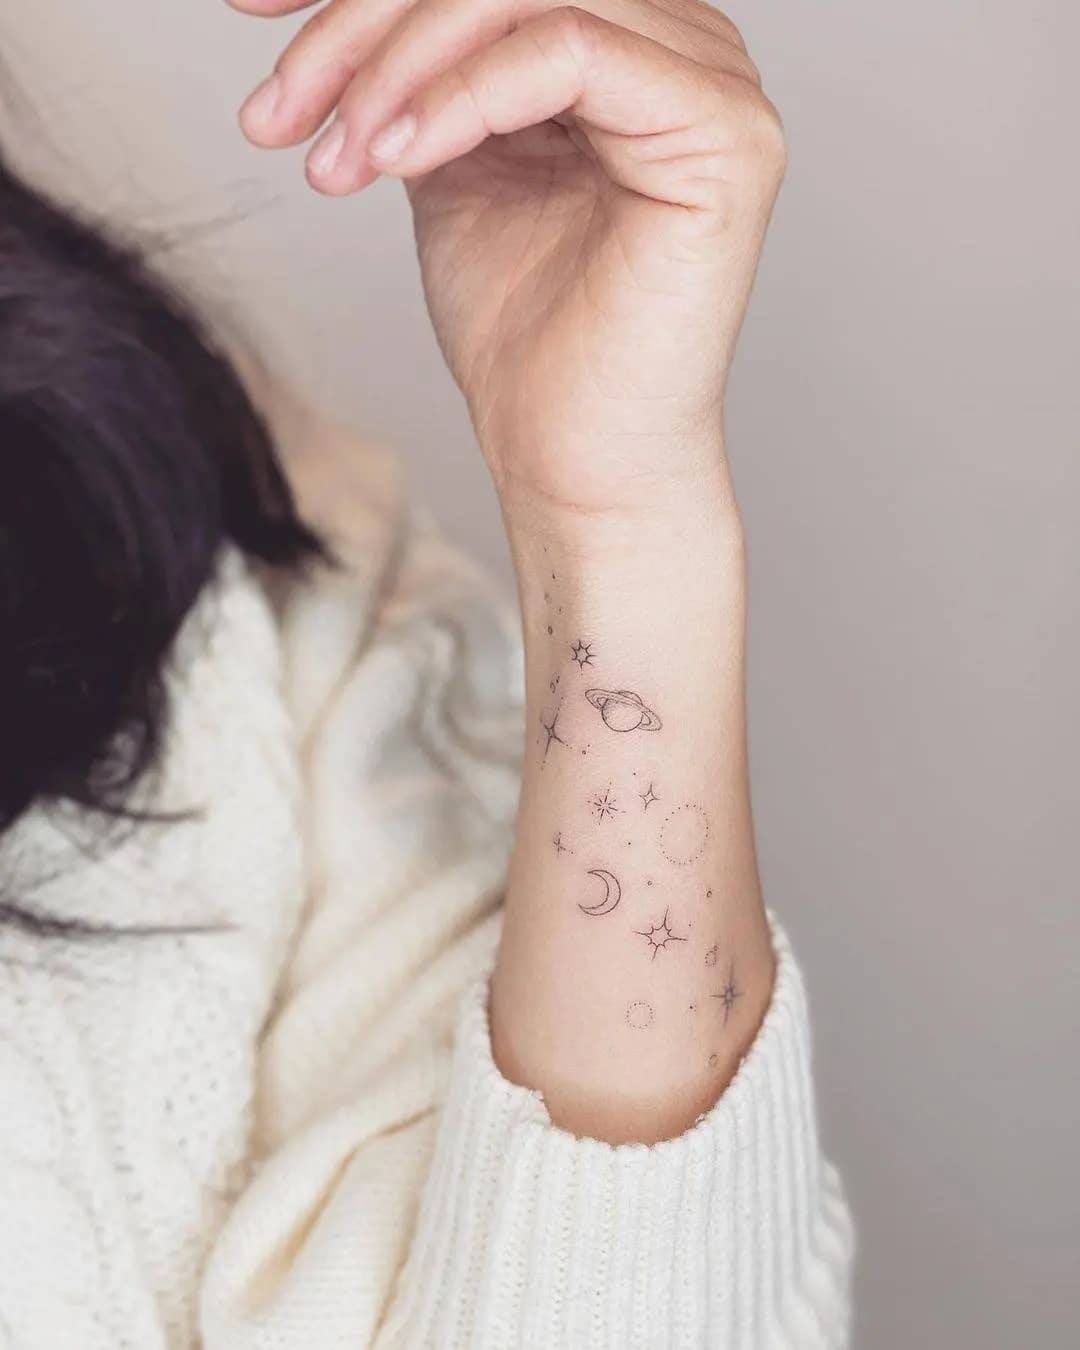 Tatuaje de estrella minimalista: diseños elegantes que te ayudarán a inspirarte